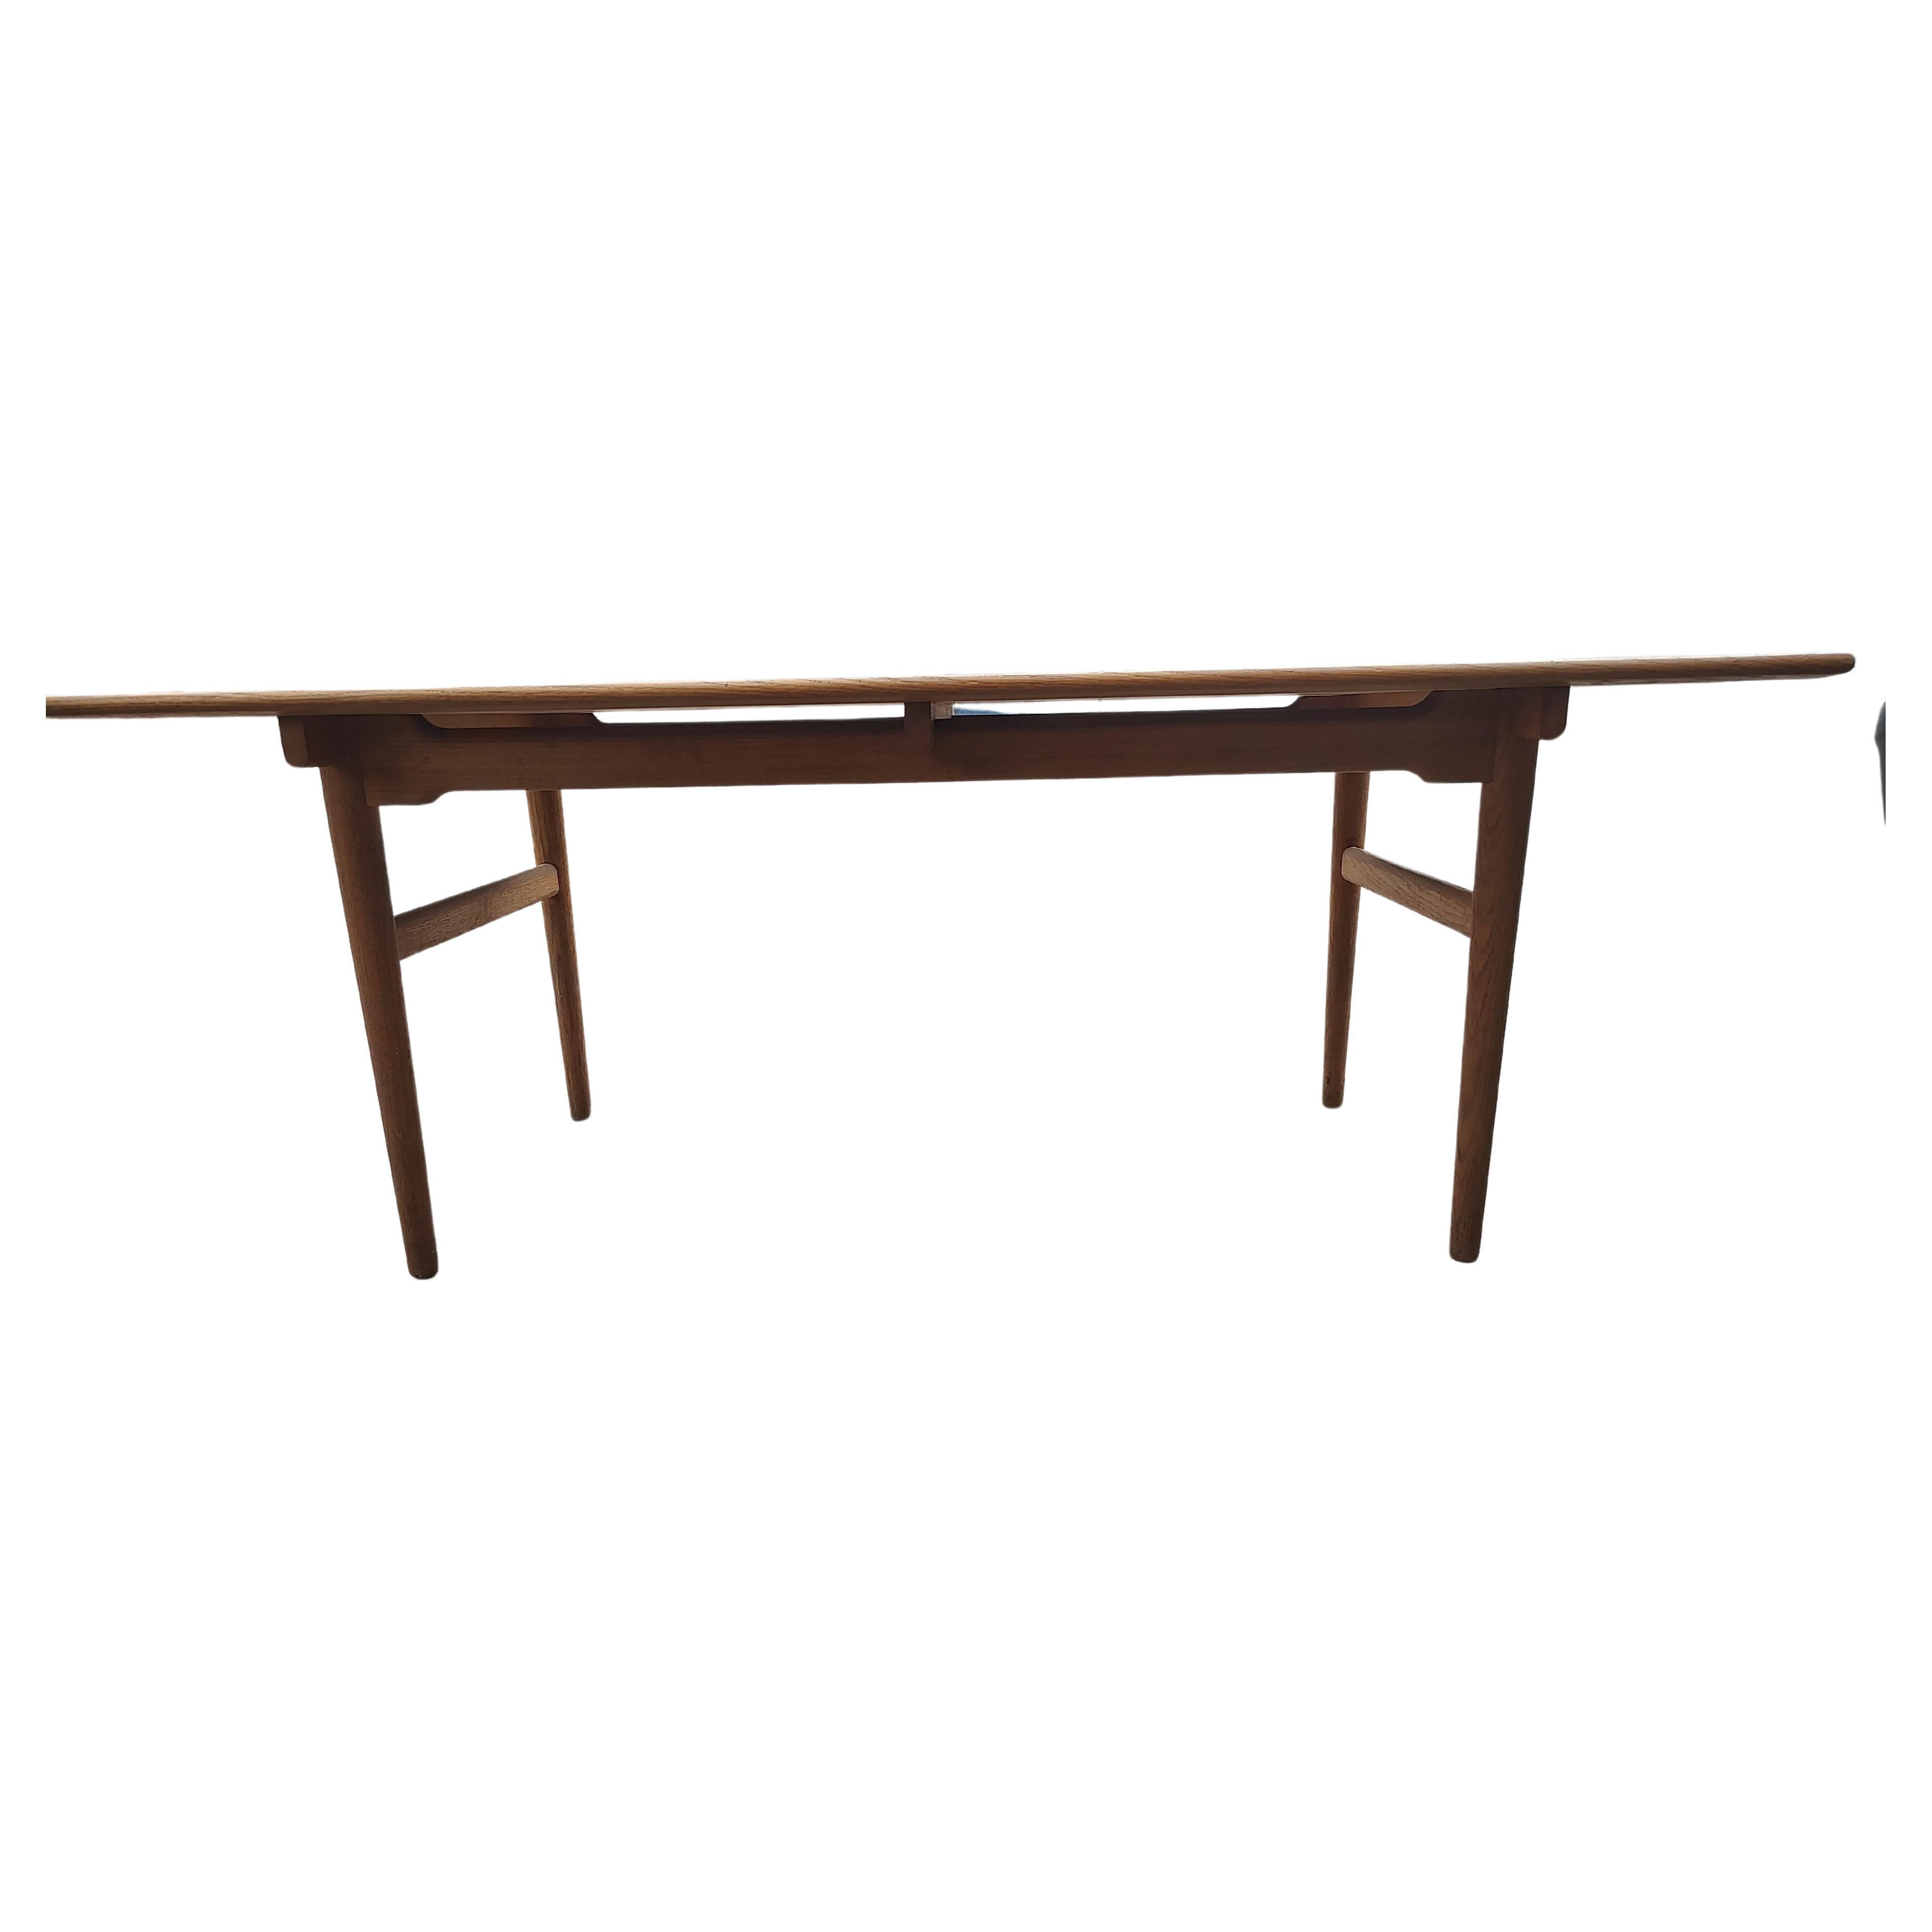 Danish Mid Century Modern  Solid Oak & Teak Dining Table Hans Wegner for Carl Hansen For Sale